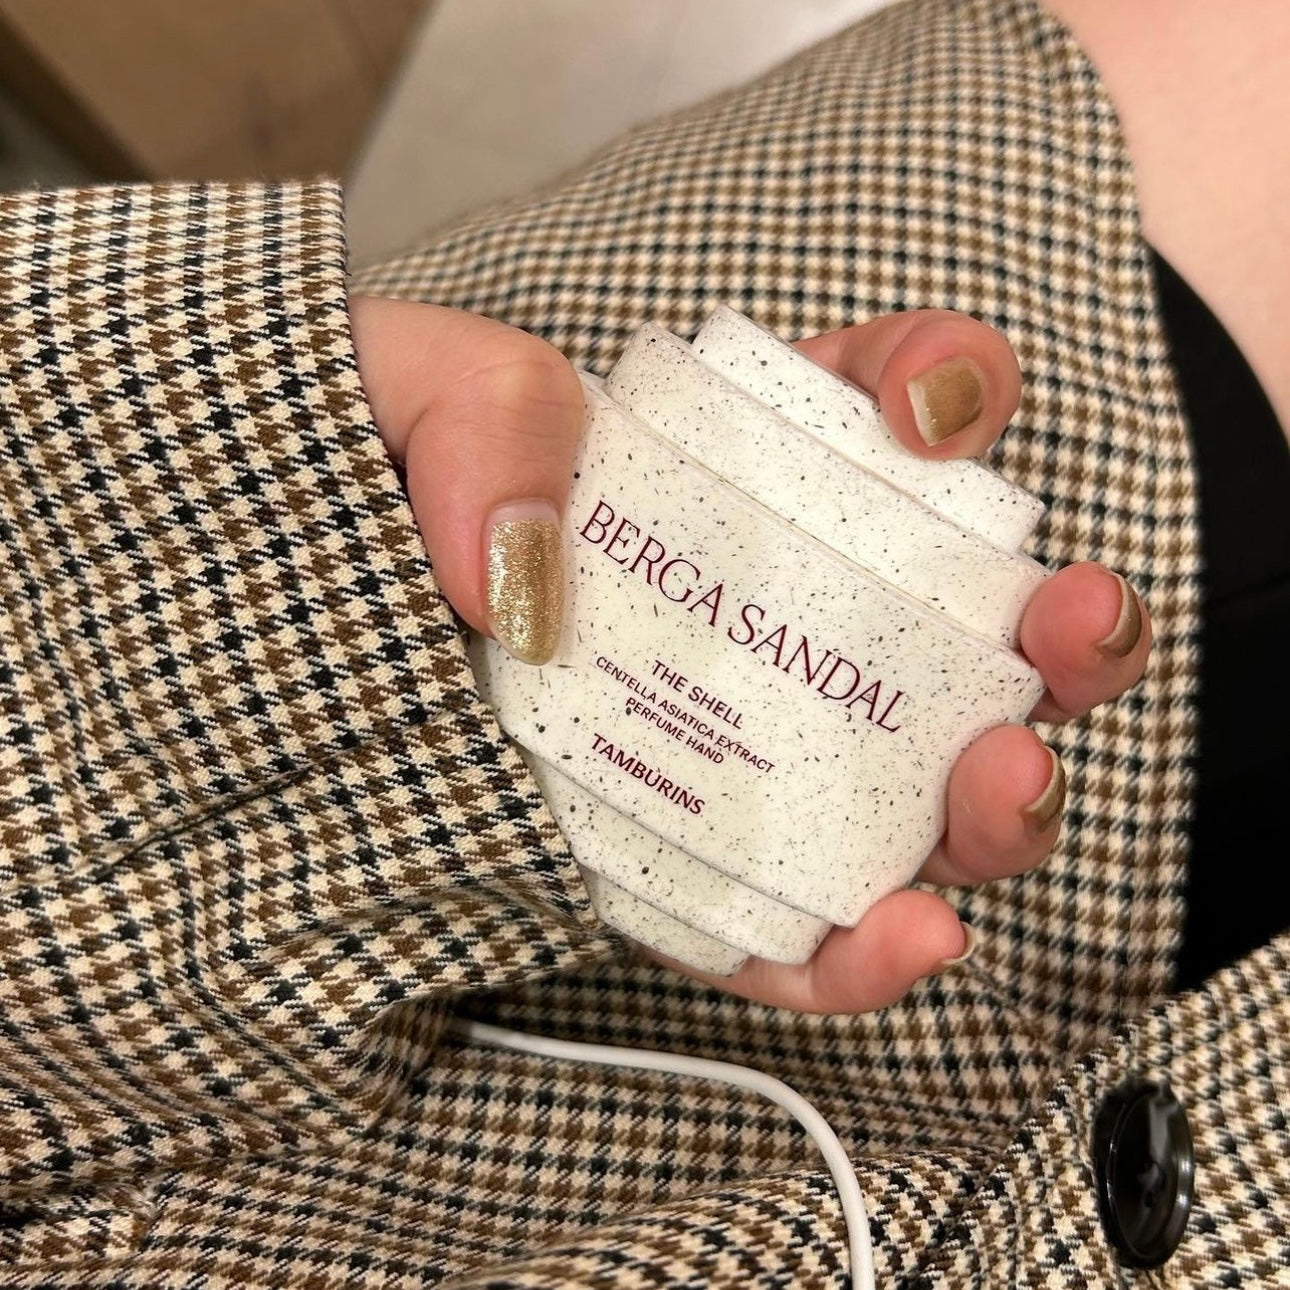 韓國香氛護膚品牌✨| TAMBURINS 貝殼香氛護手霜 🐚 The Shell Perfume Hand Cream